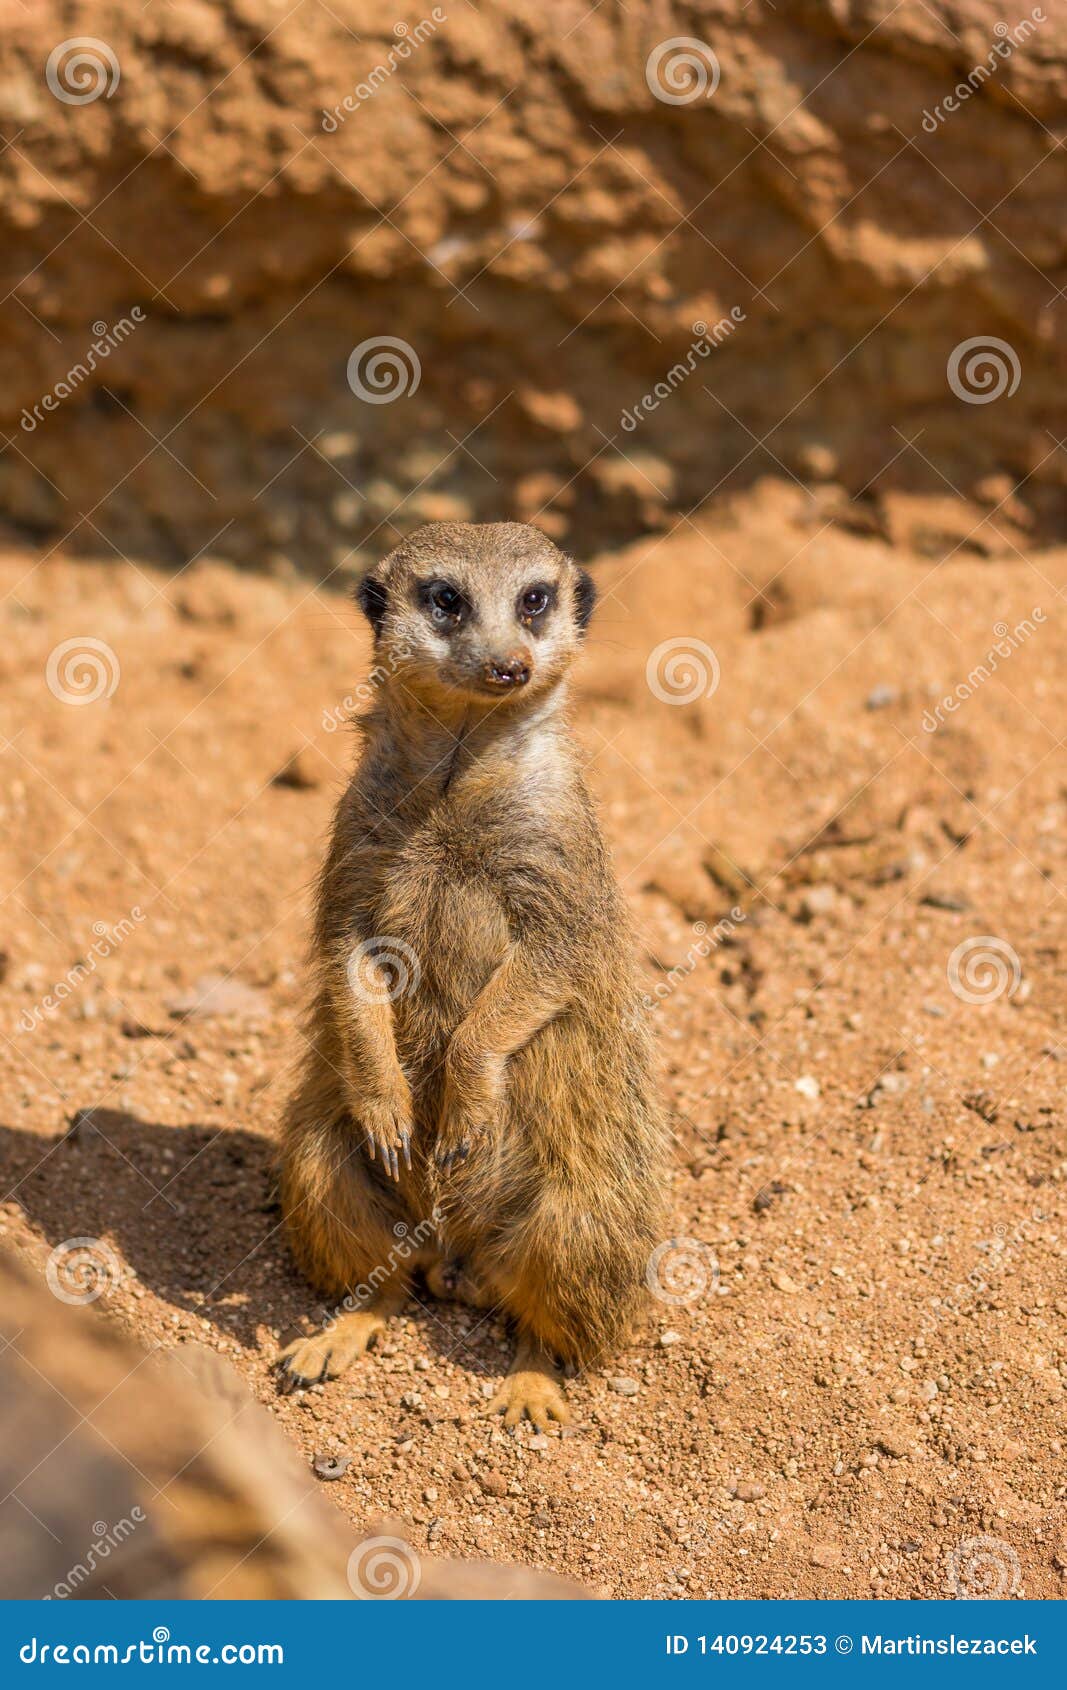 Meerkat Animal Latin Name Suricata Suricatta in the Wild. Detail of African  Animal Walking on the Ground Stock Image - Image of desert, background:  140924253